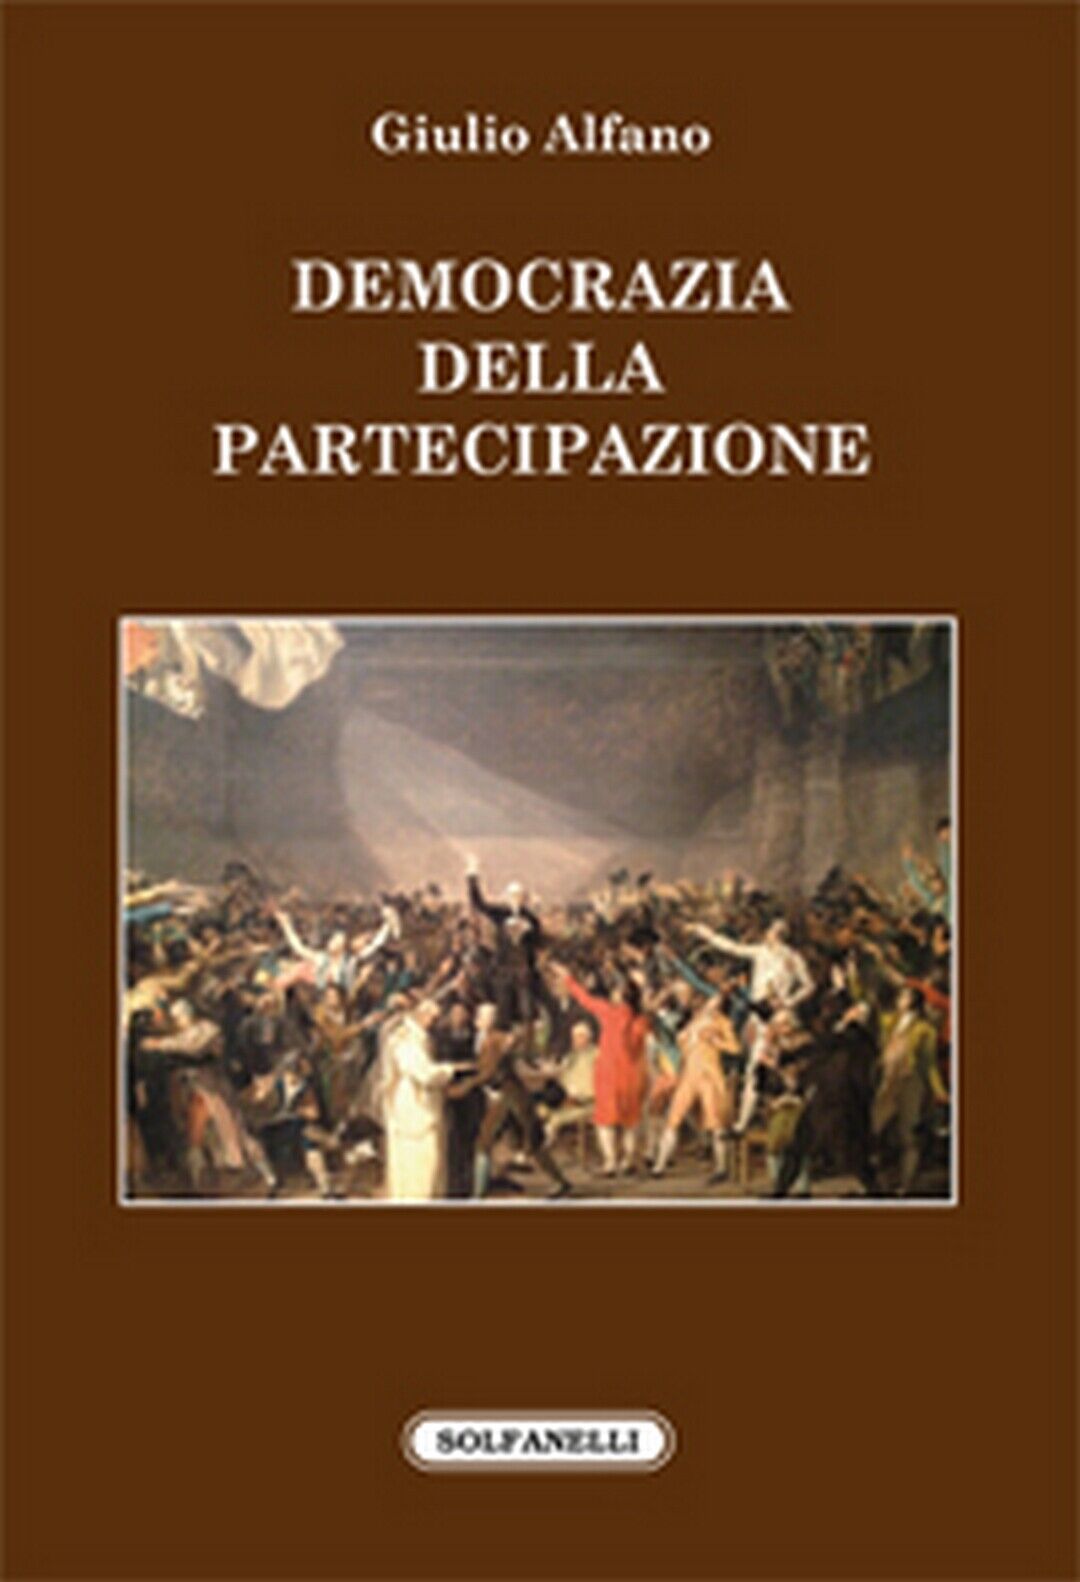 DEMOCRAZIA DELLA PARTECIPAZIONE  di Giulio Alfano,  Solfanelli Edizioni